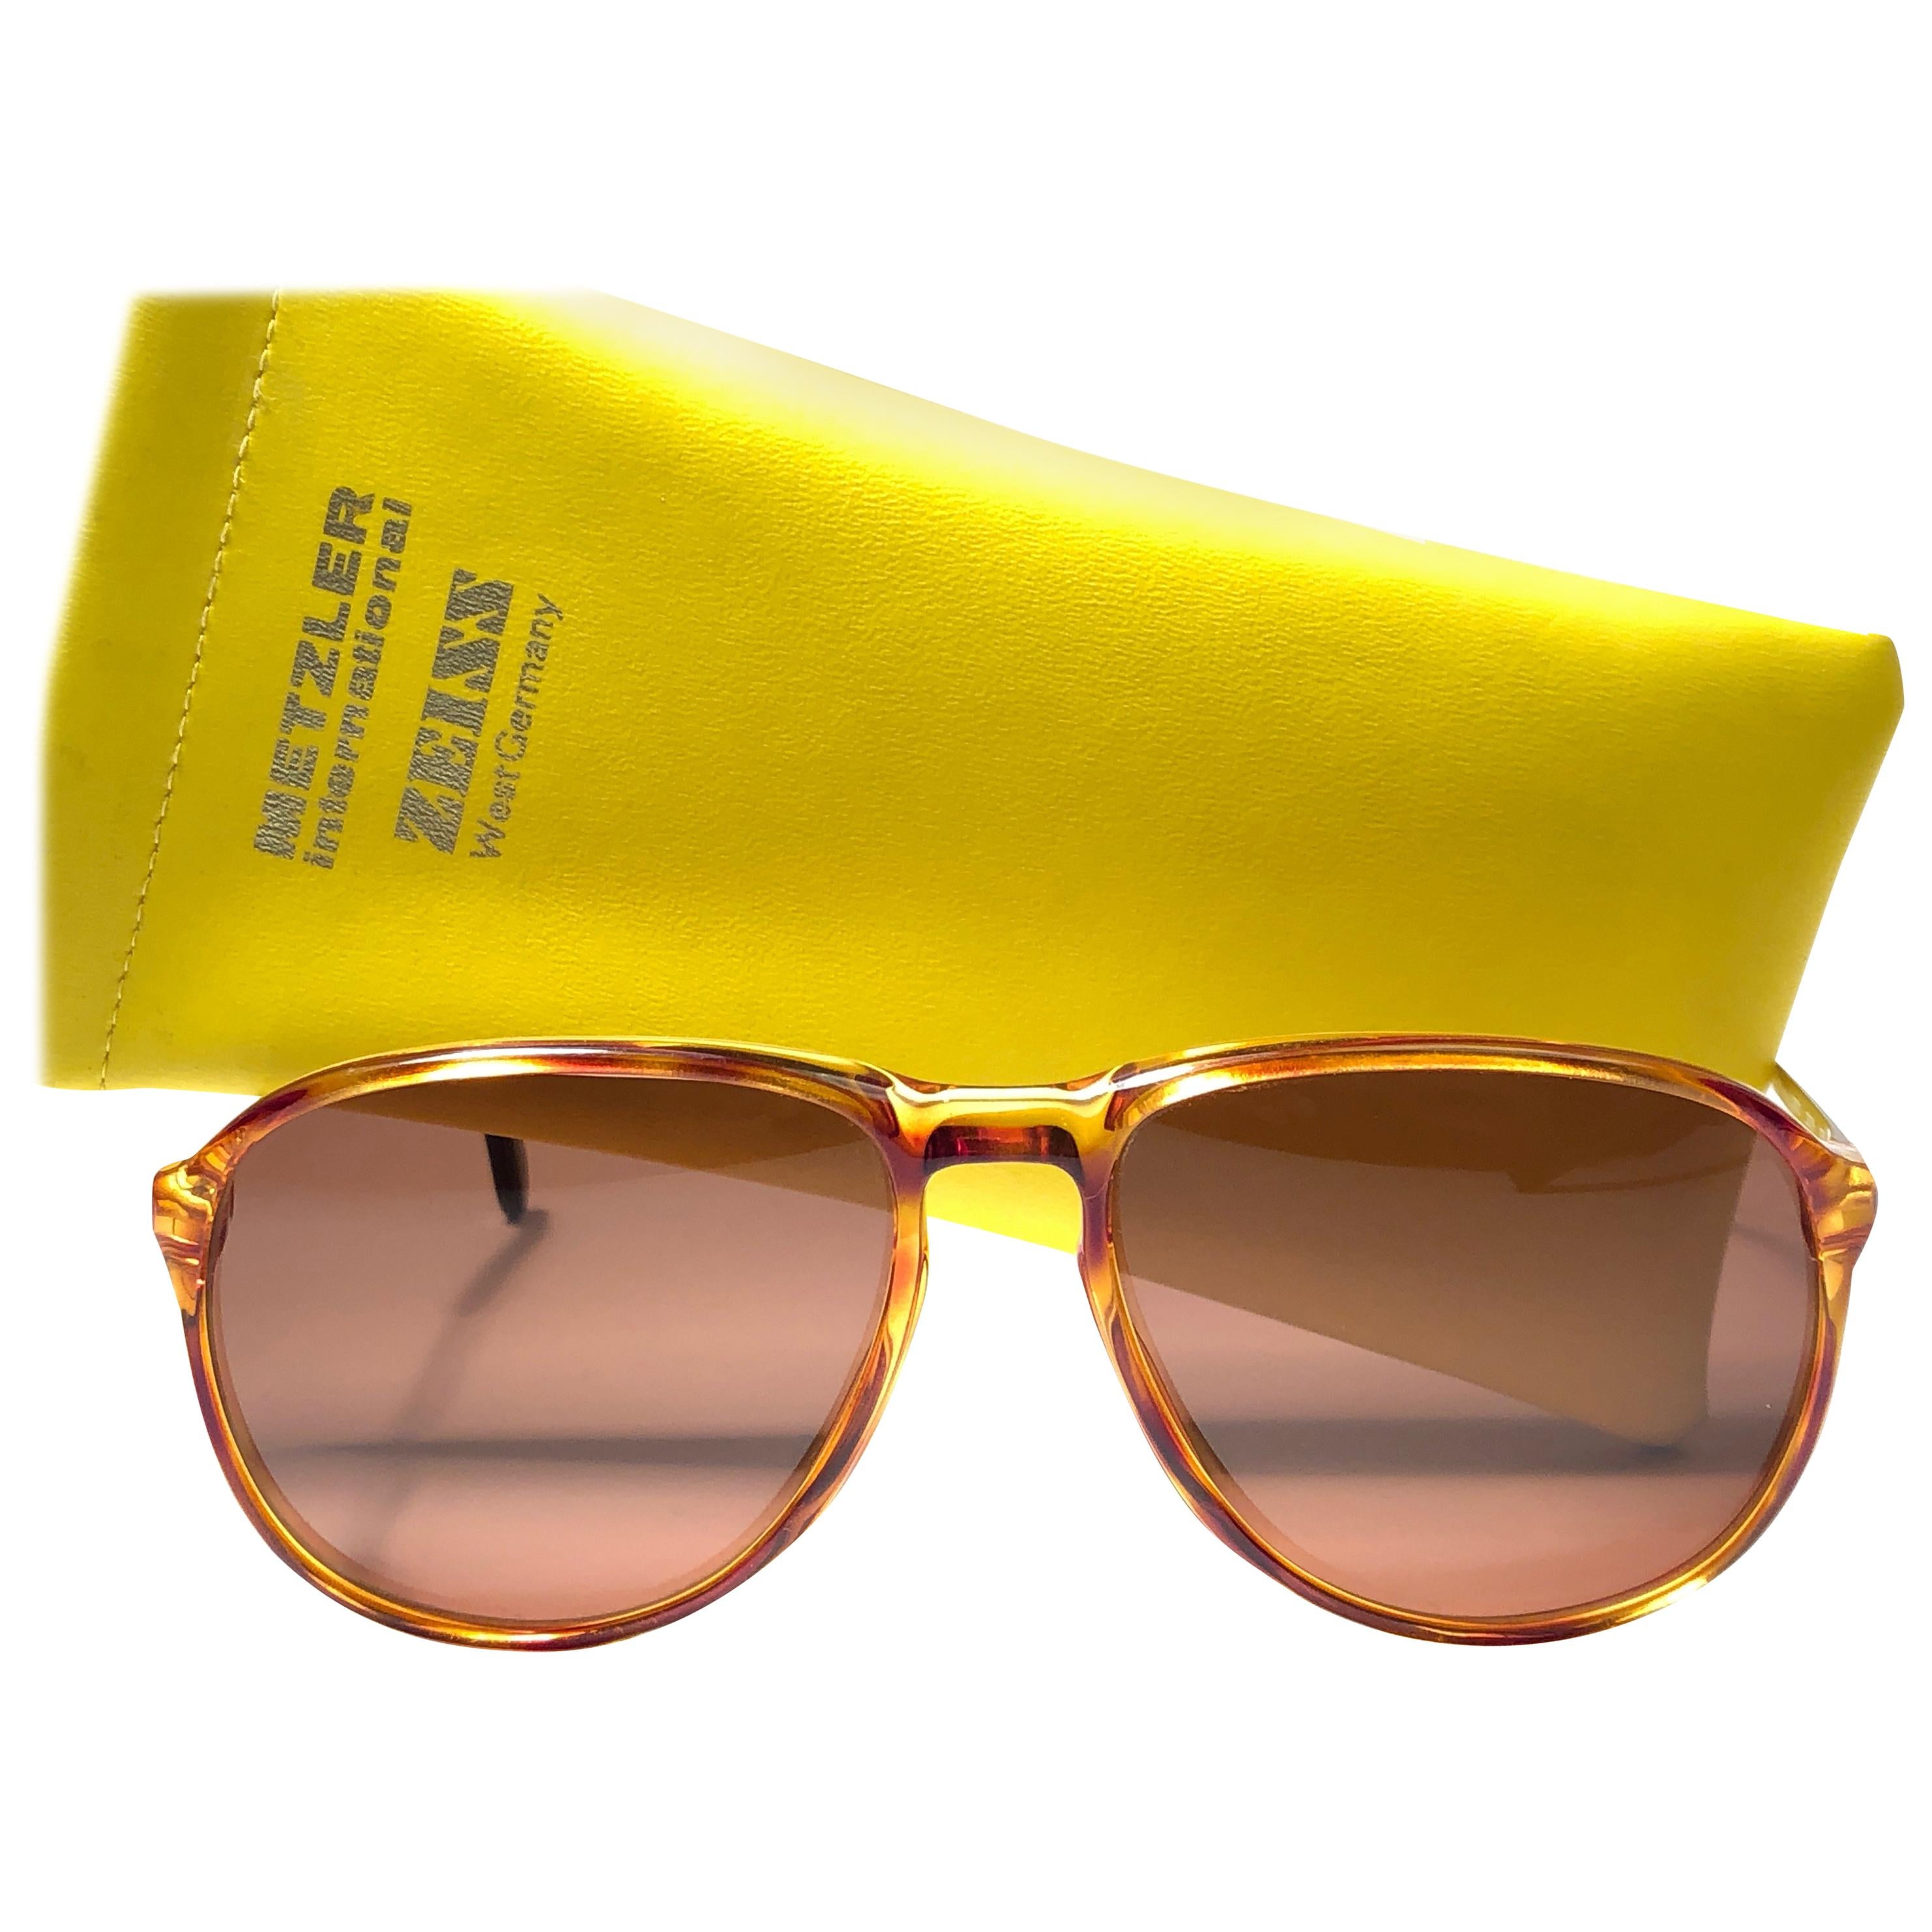 New Vintage Zeiss Tortoise Frame Brown Lenses 1970's Sunglasses